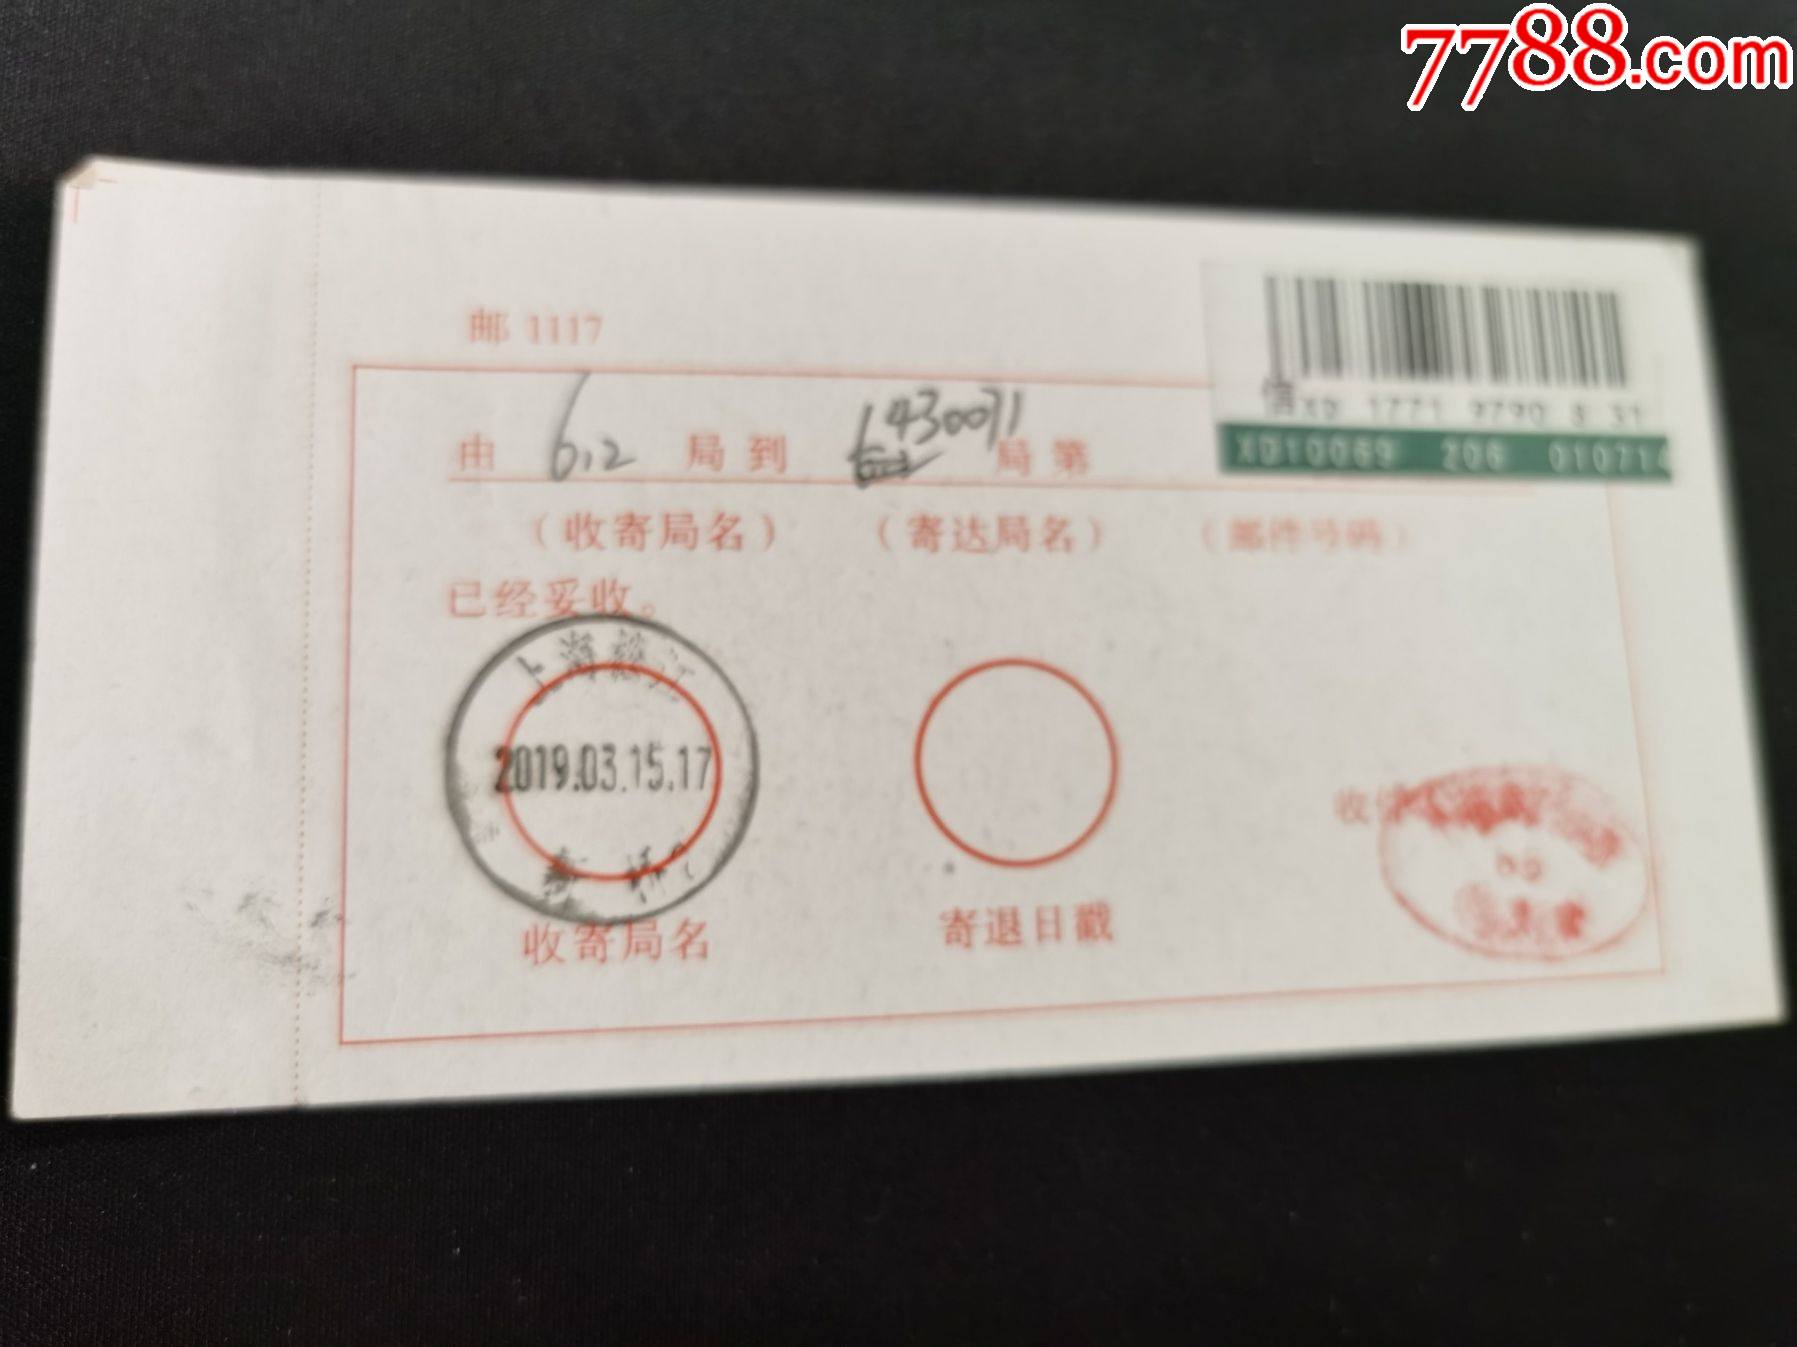 国内邮政回执;上海松江新桥2019年3年15日戳